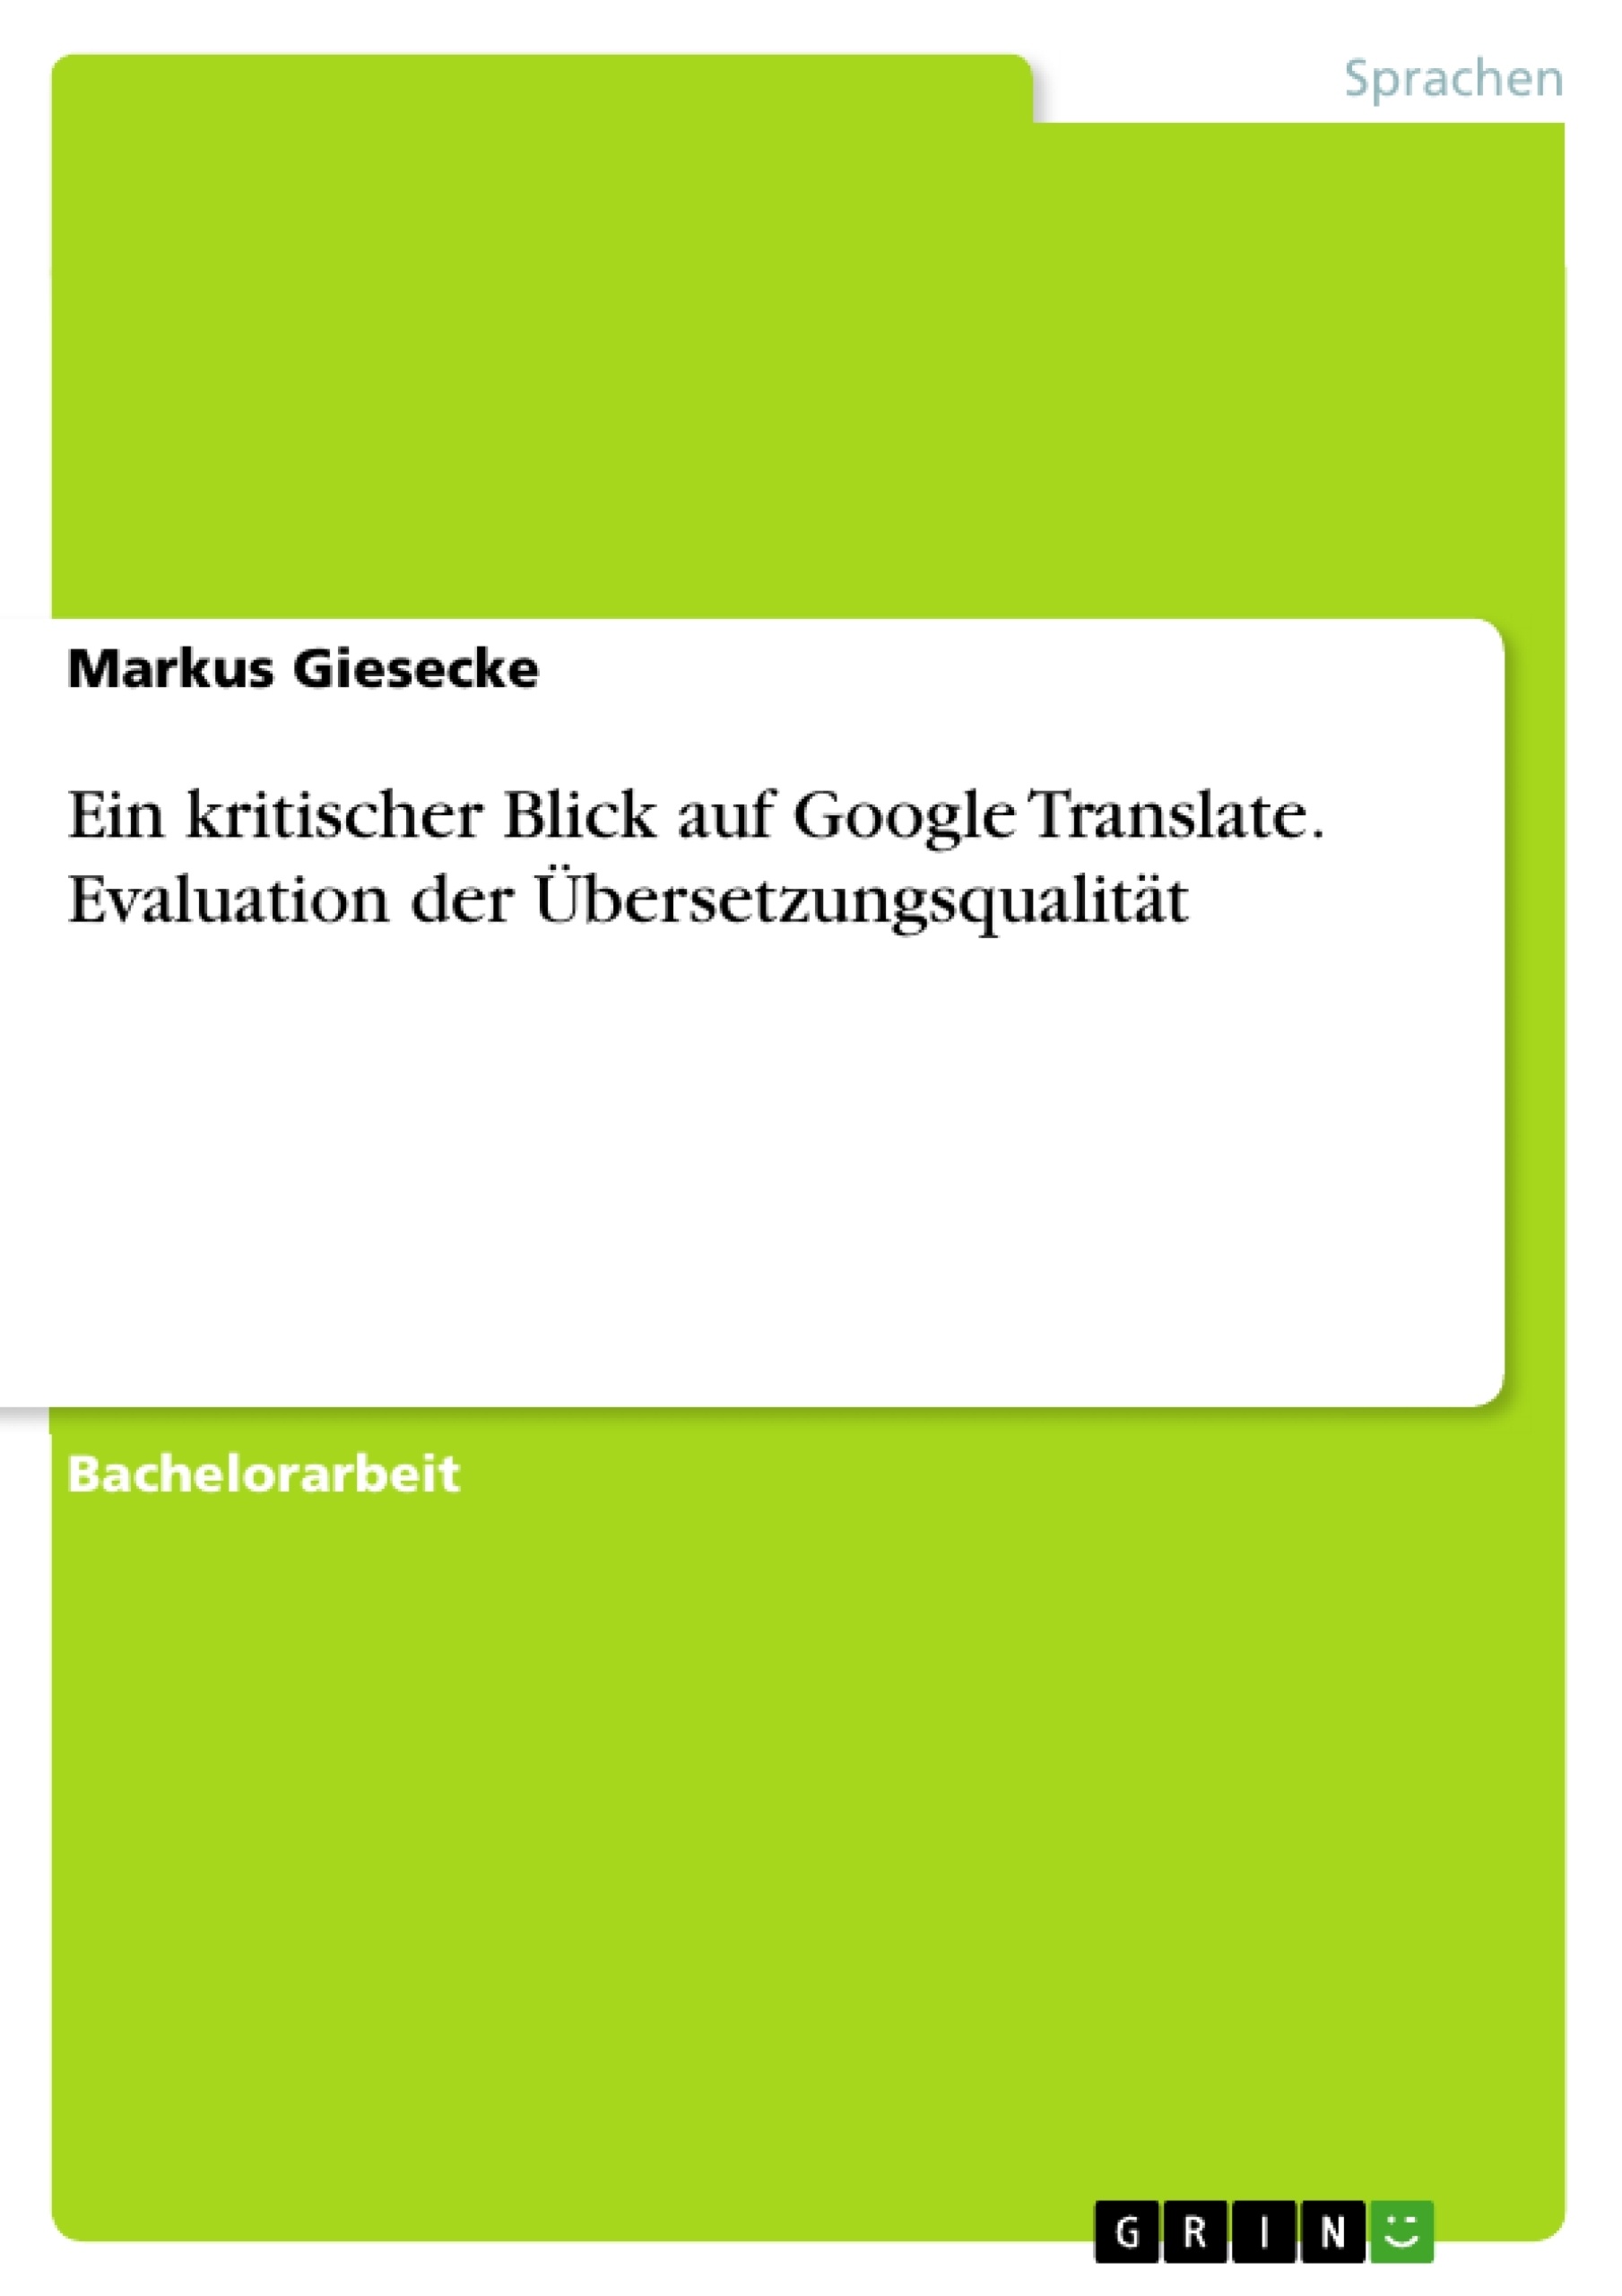 Title: Ein kritischer Blick auf Google Translate. Evaluation der Übersetzungsqualität